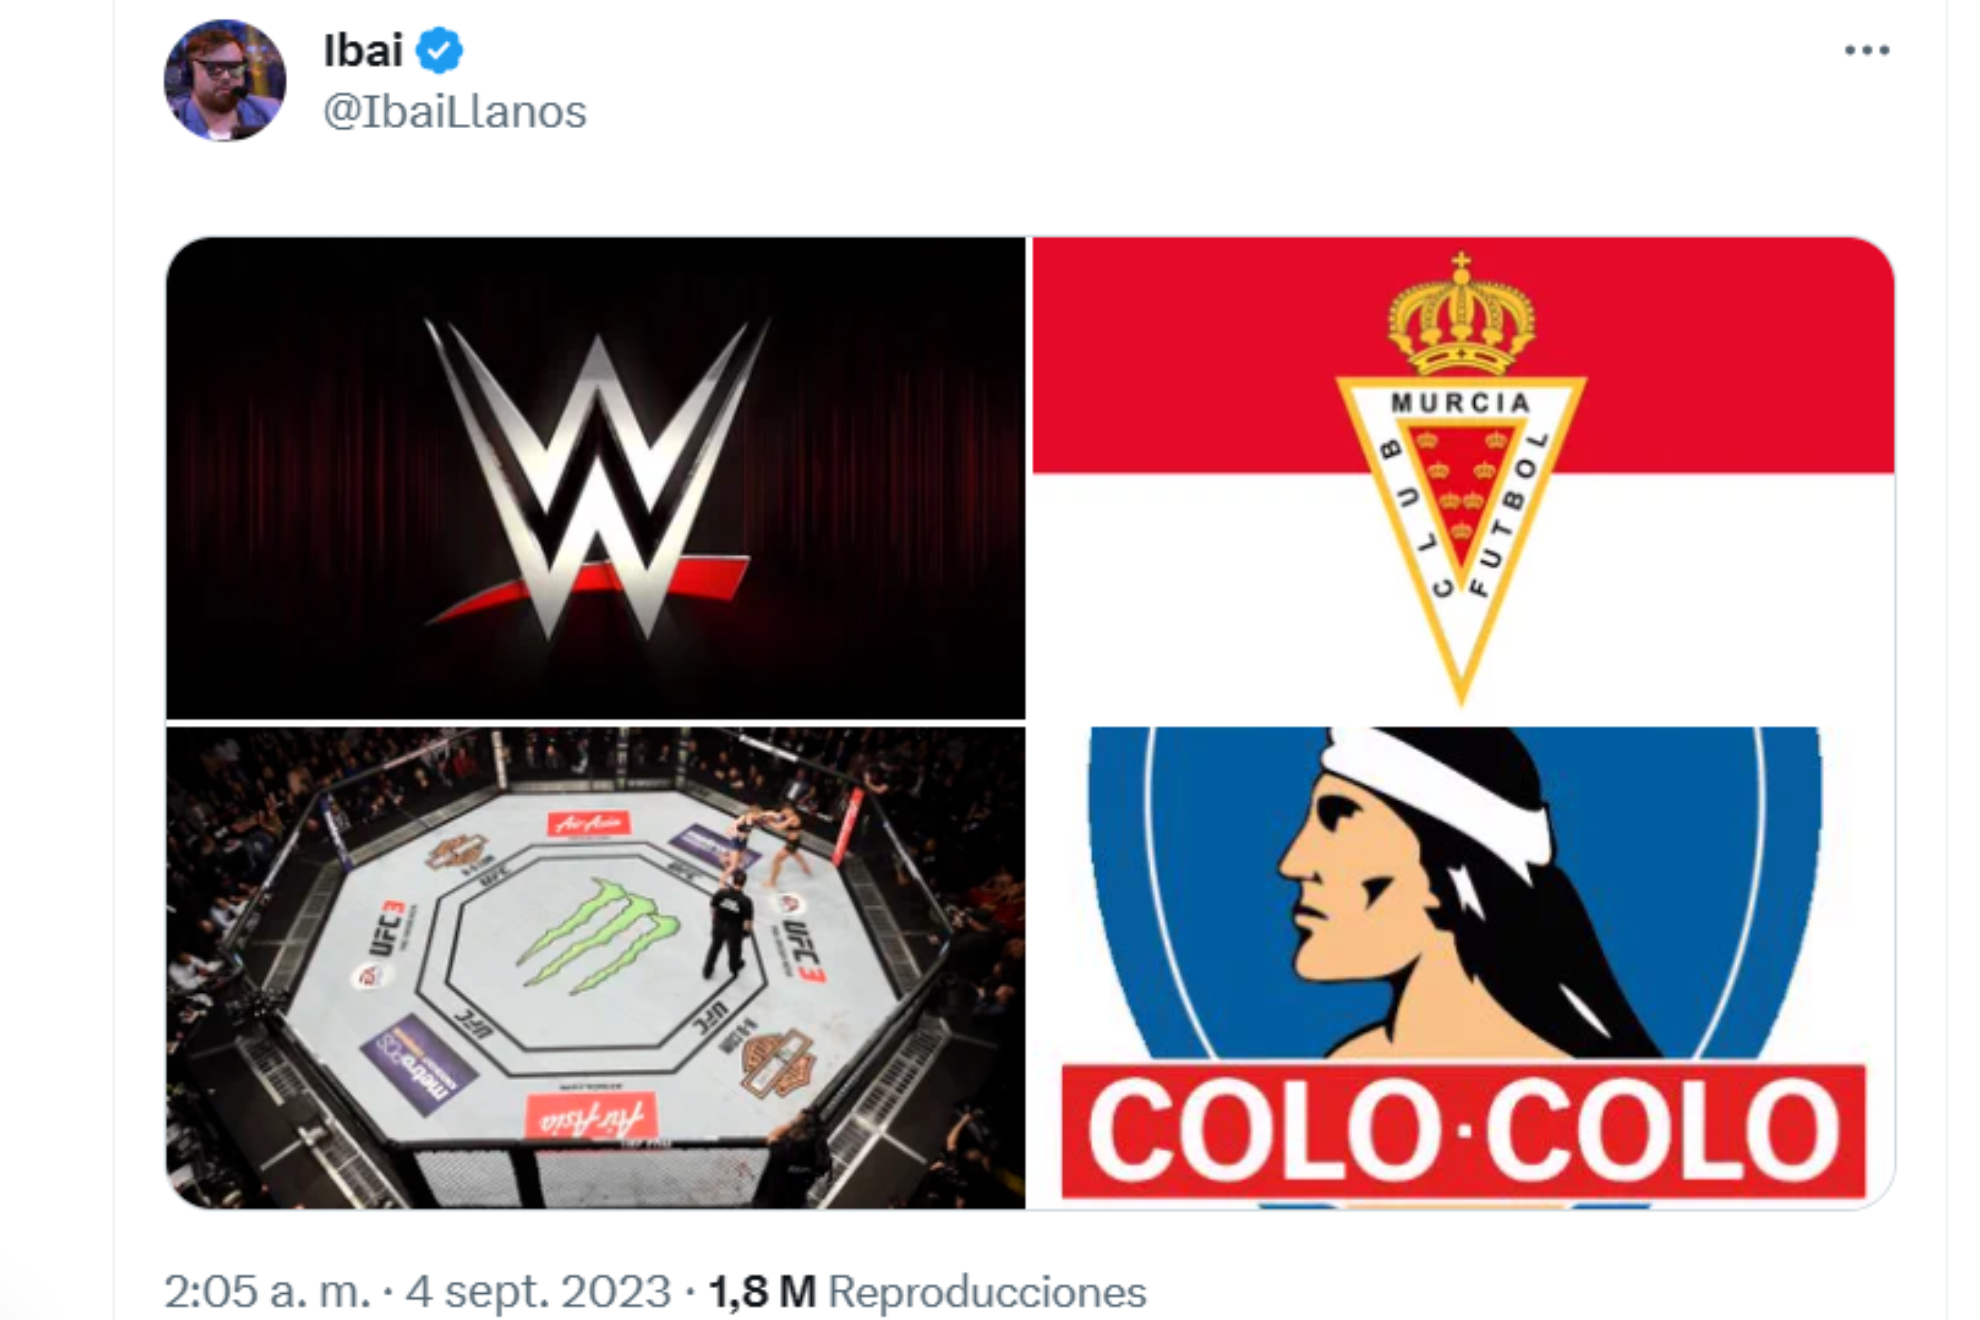 El enigmático mensaje de Ibai Llanos en Twitter que incluye al Real Murcia, Colo-Colo, la WWE y MMA